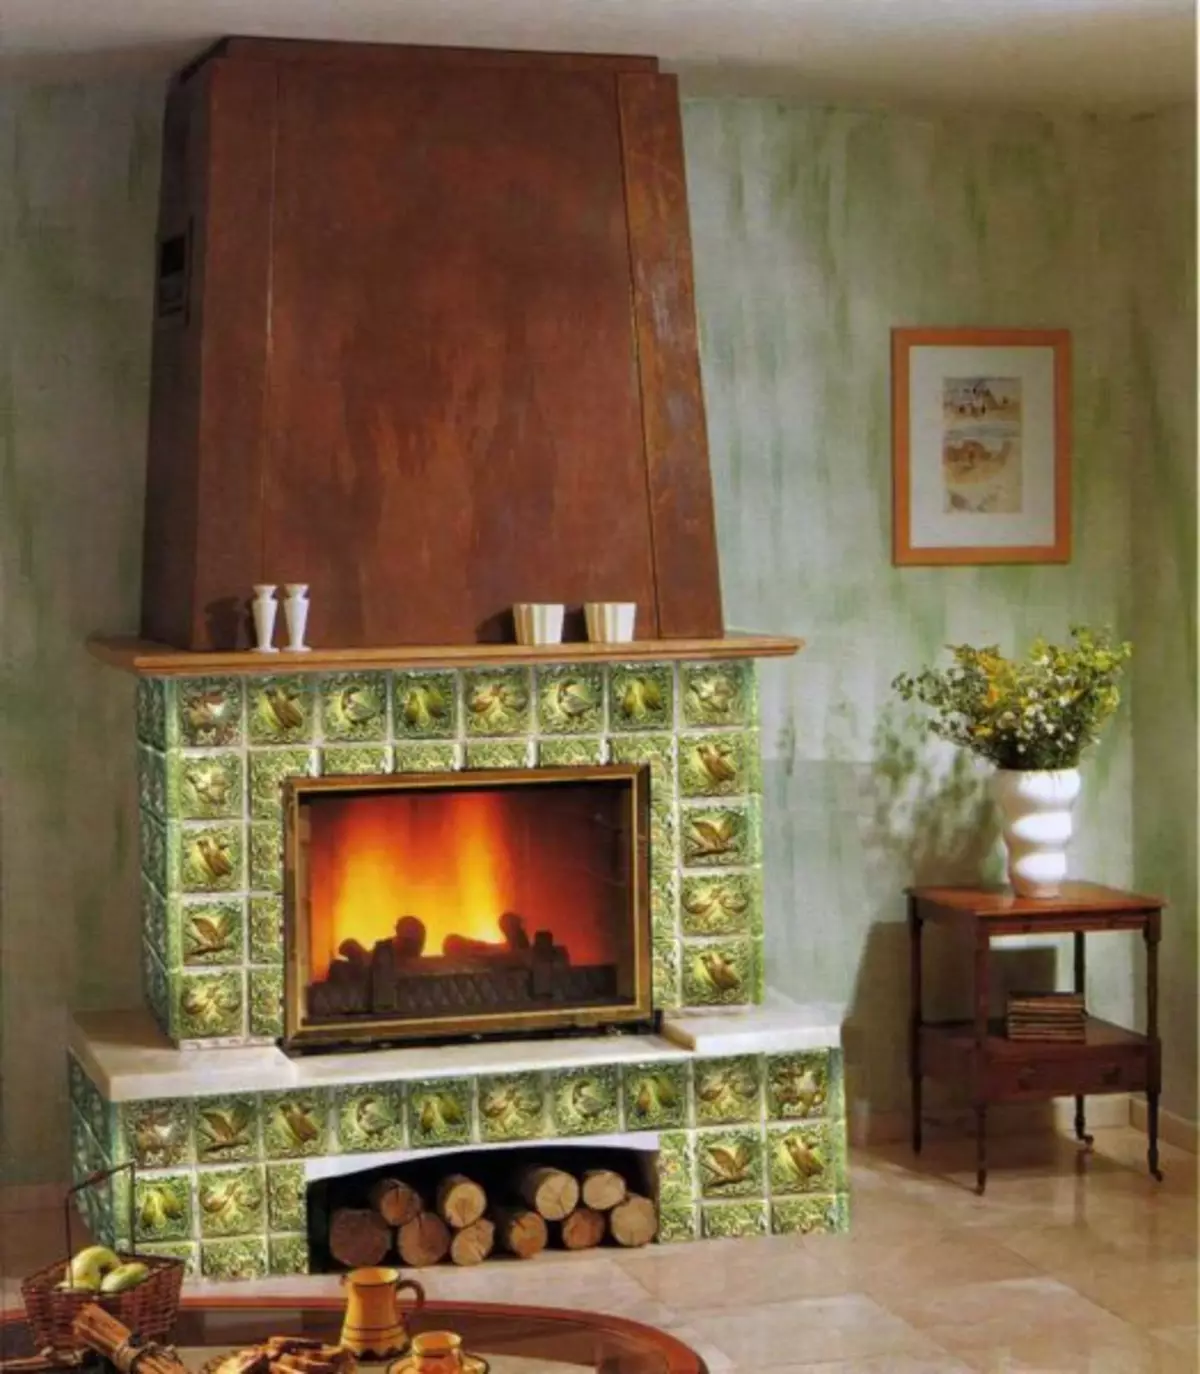 Paano paghiwalayin ang fireplace: plaster, cladding tile, bato